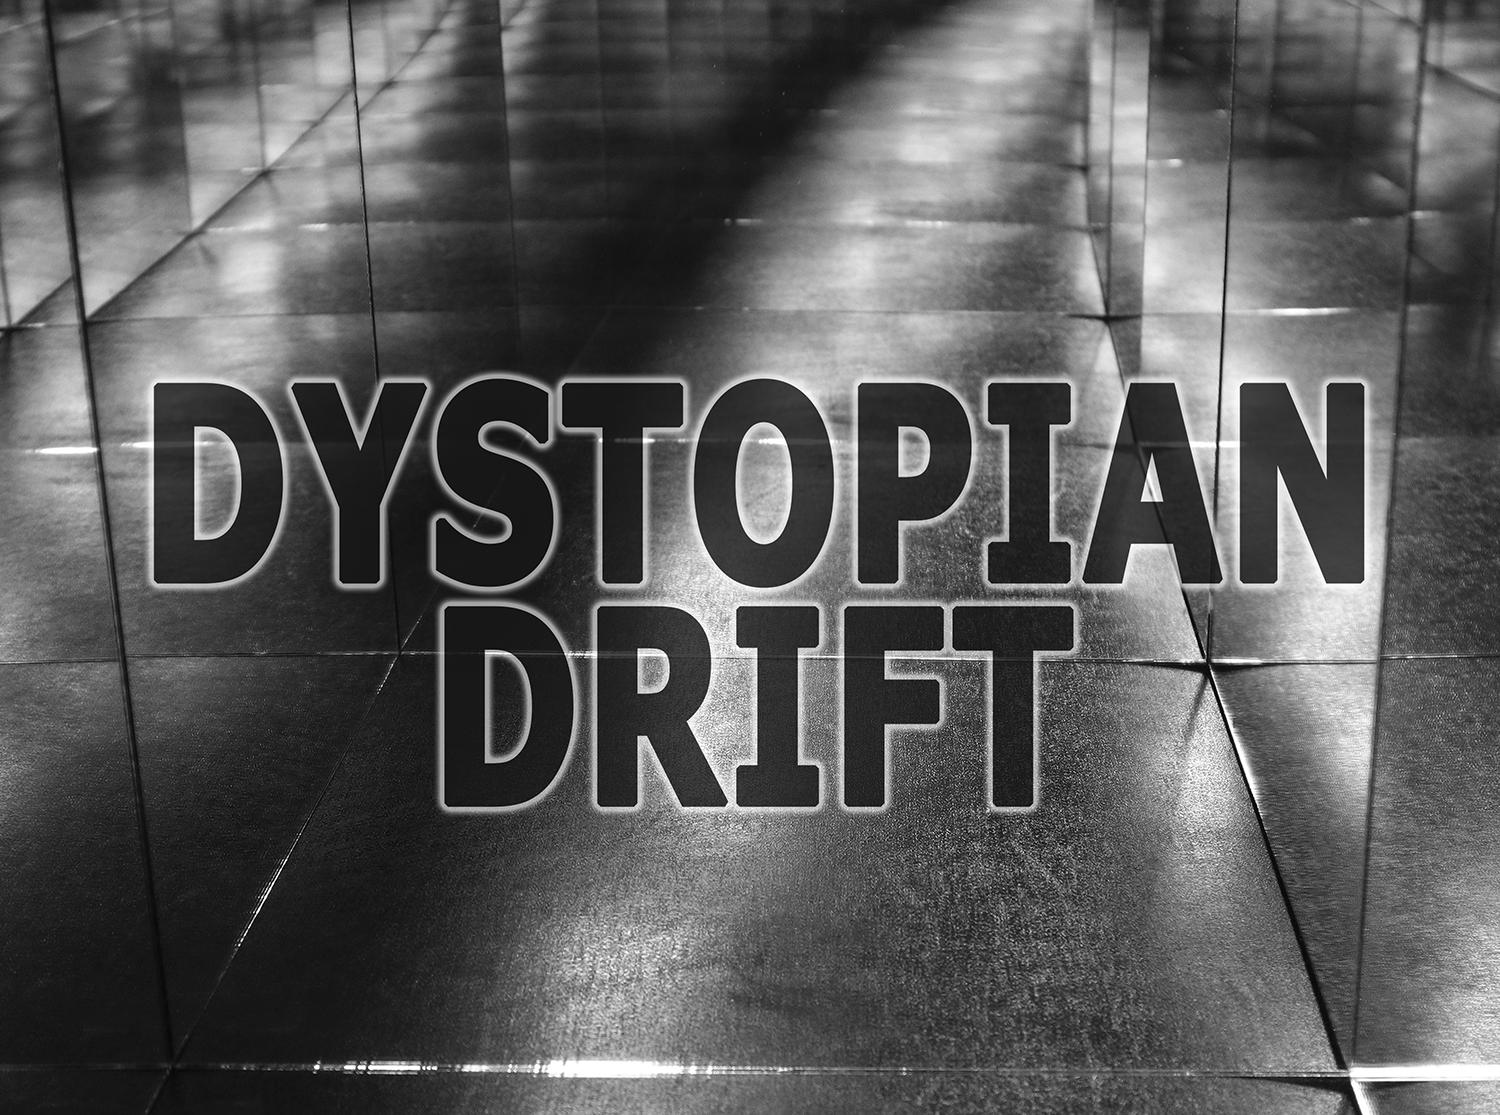 dystopian drift